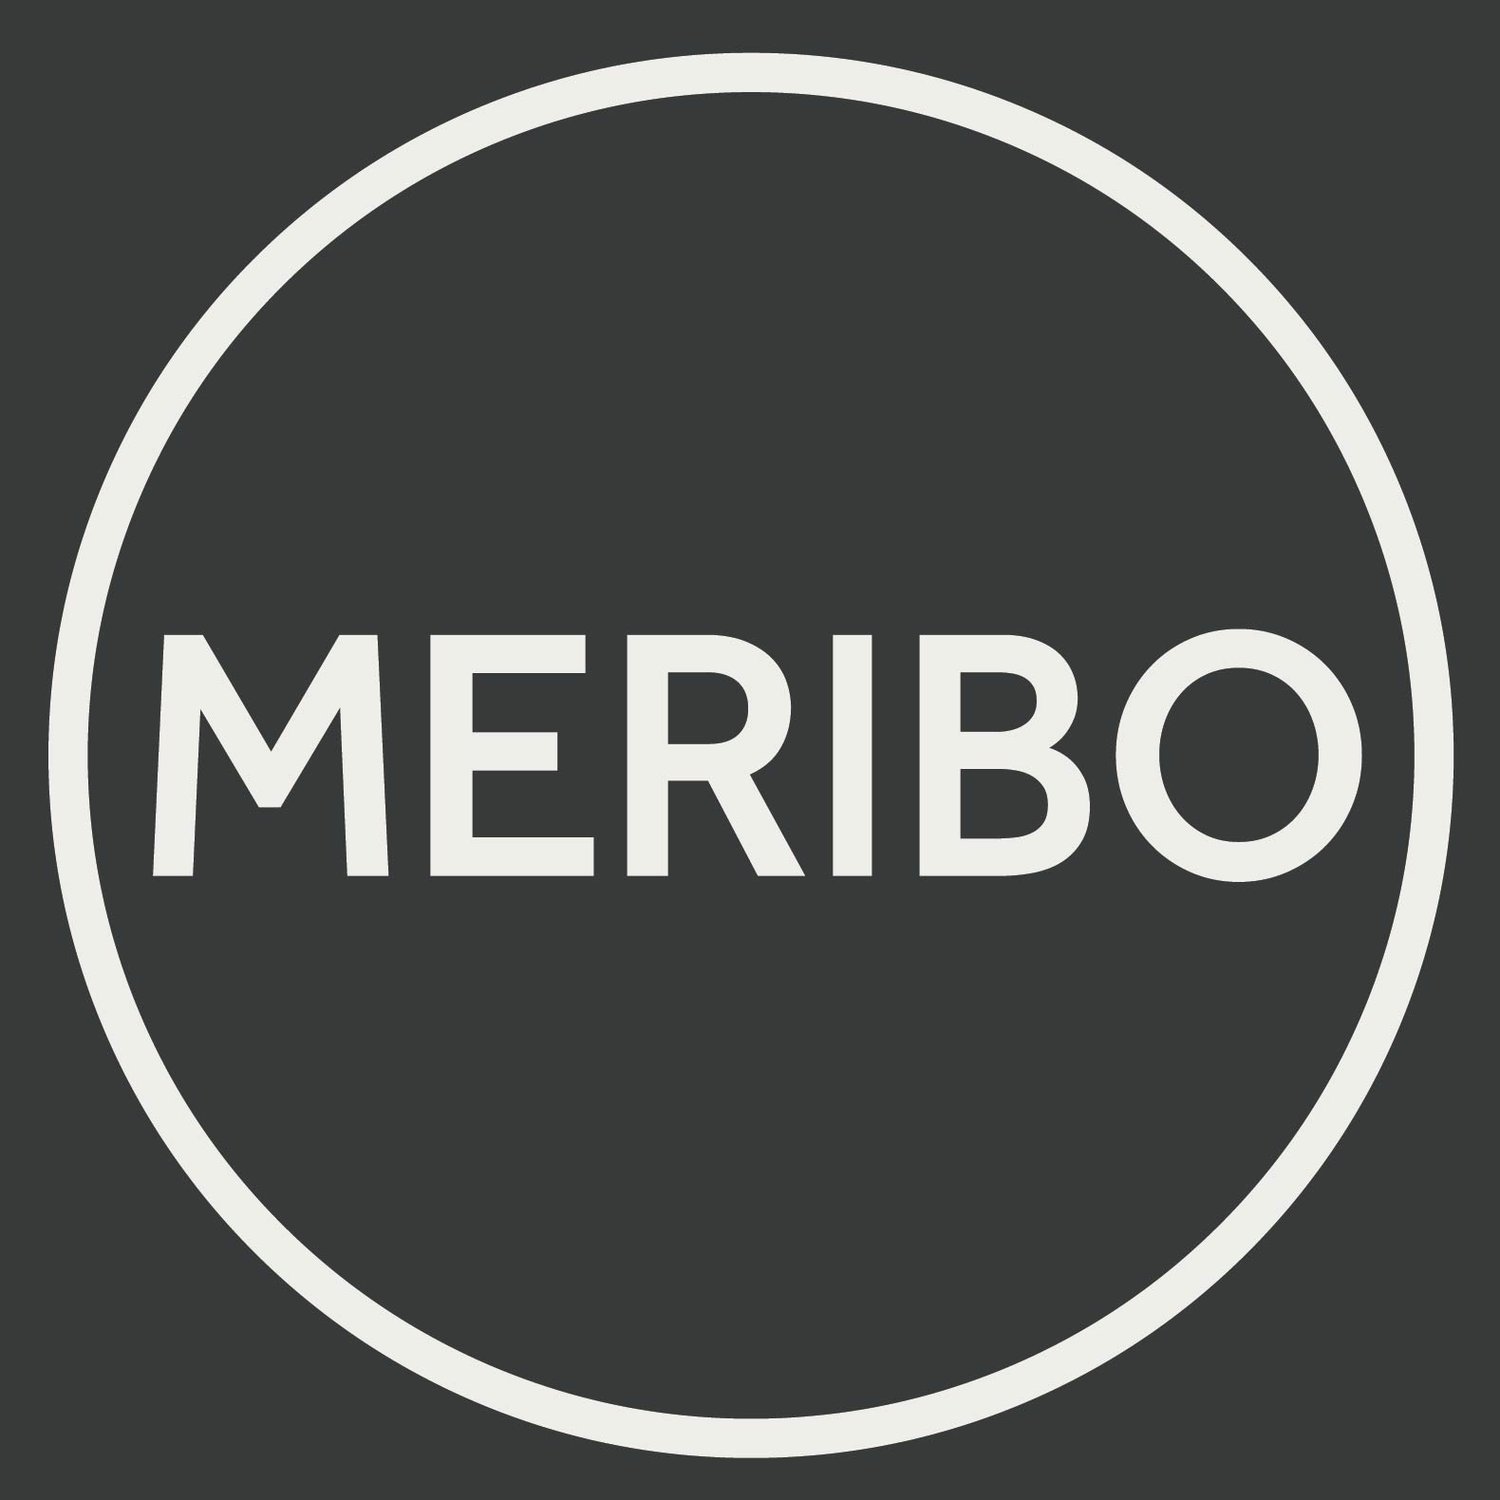 Meribo